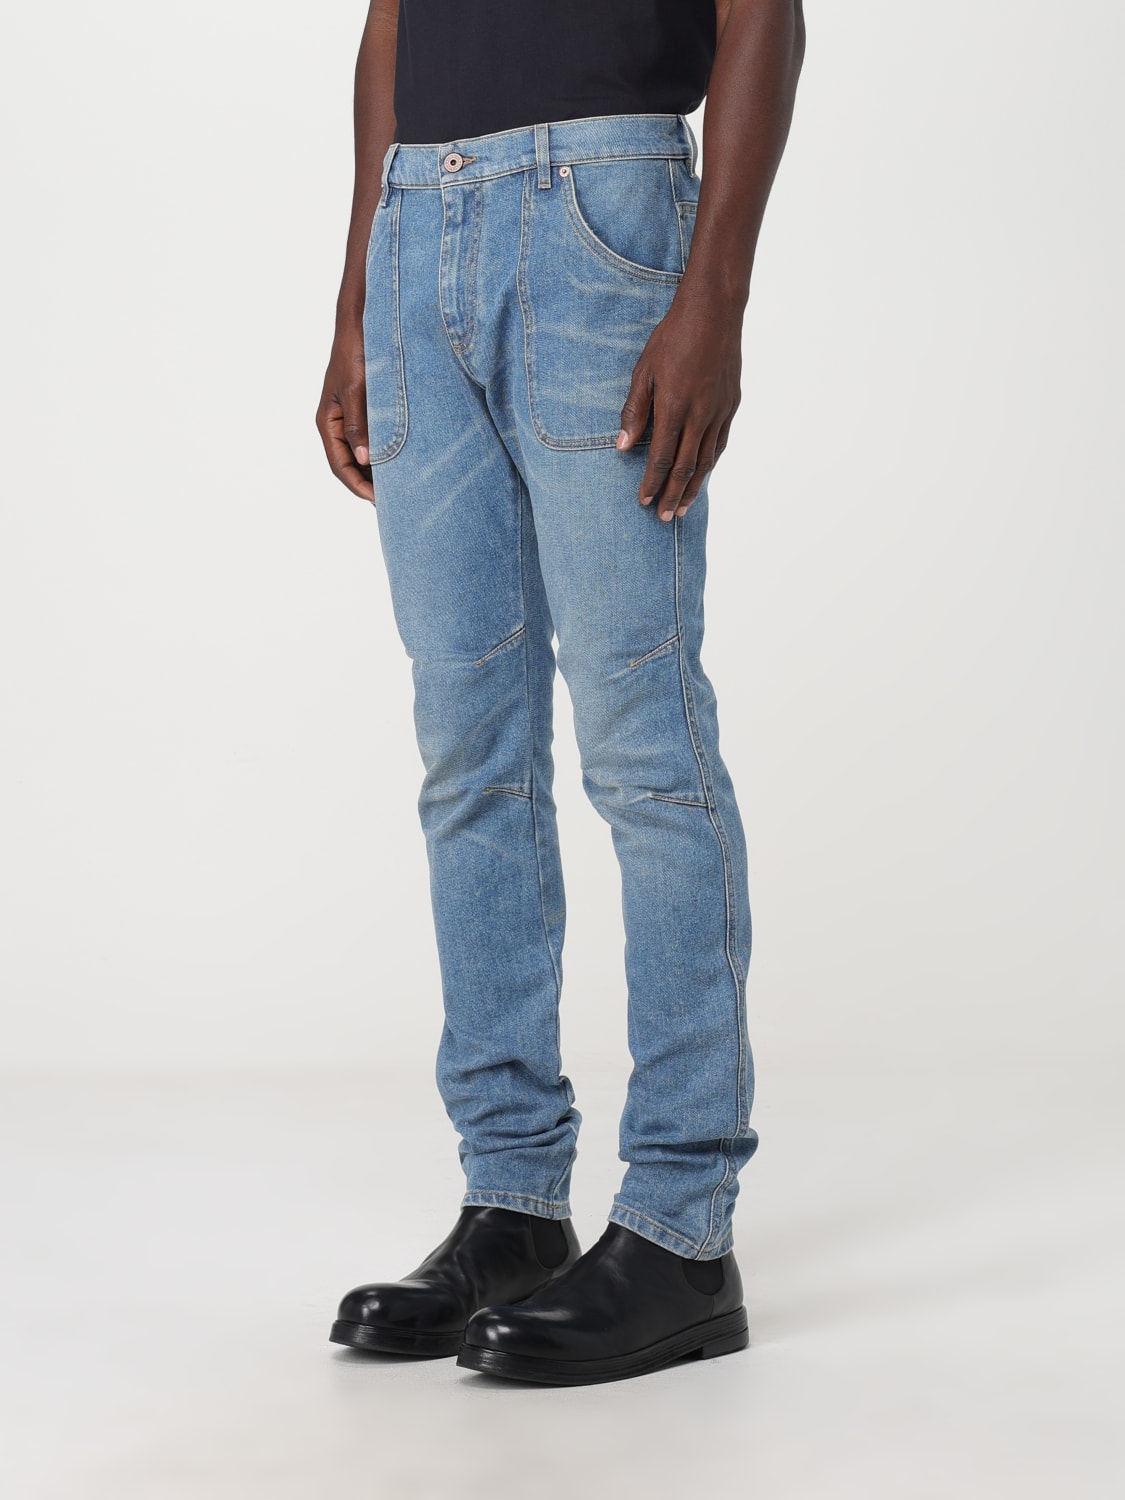 BALMAIN: jeans man - Blue | Balmain jeans BH1MG001DD62 online at GIGLIO.COM